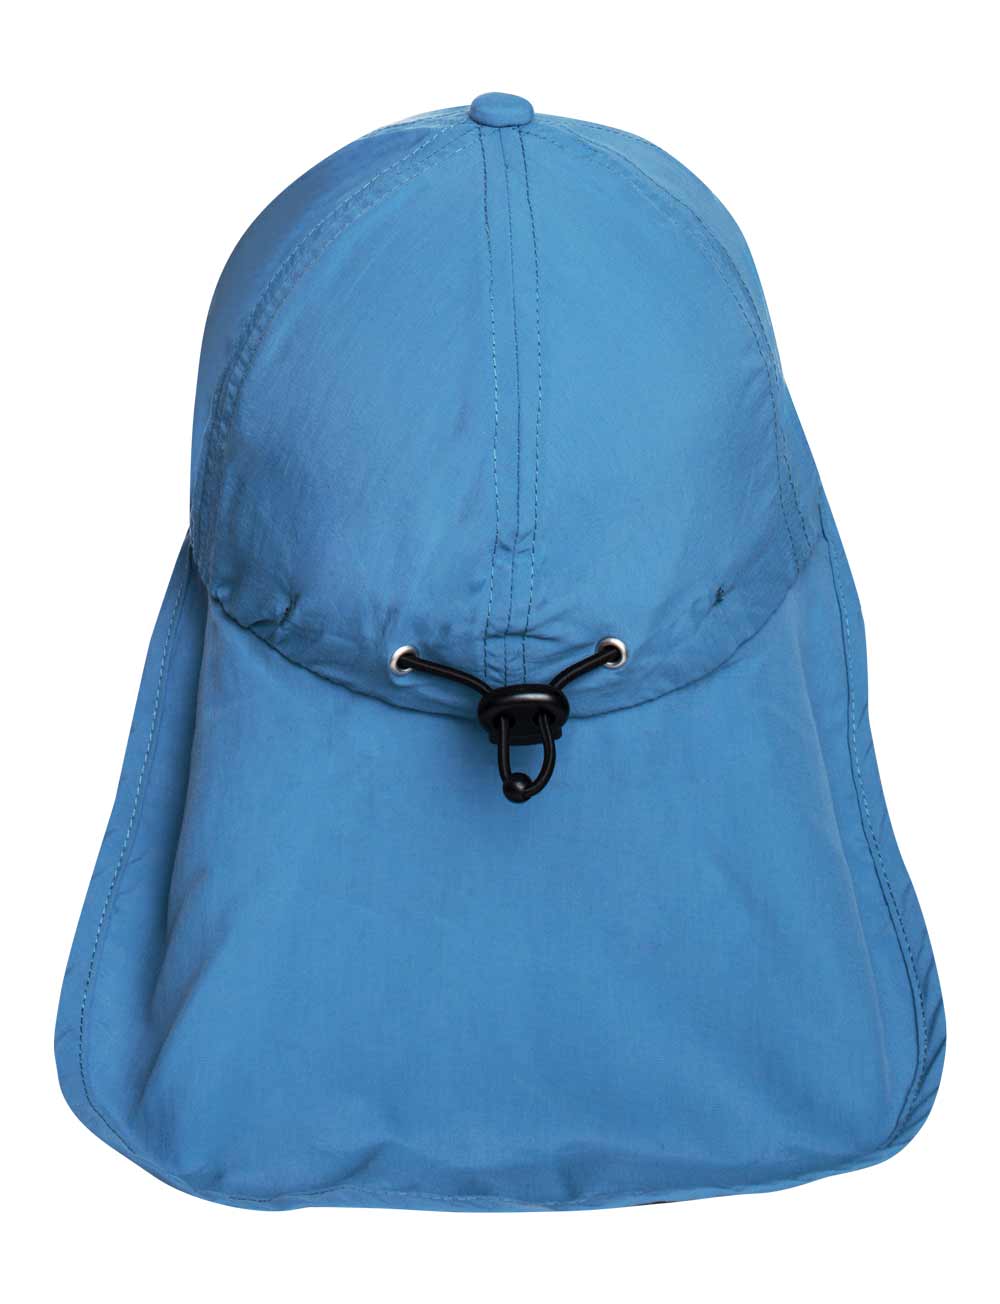 Schutz Cap Bites mit Nackenschutz Kinder recycelt blau back